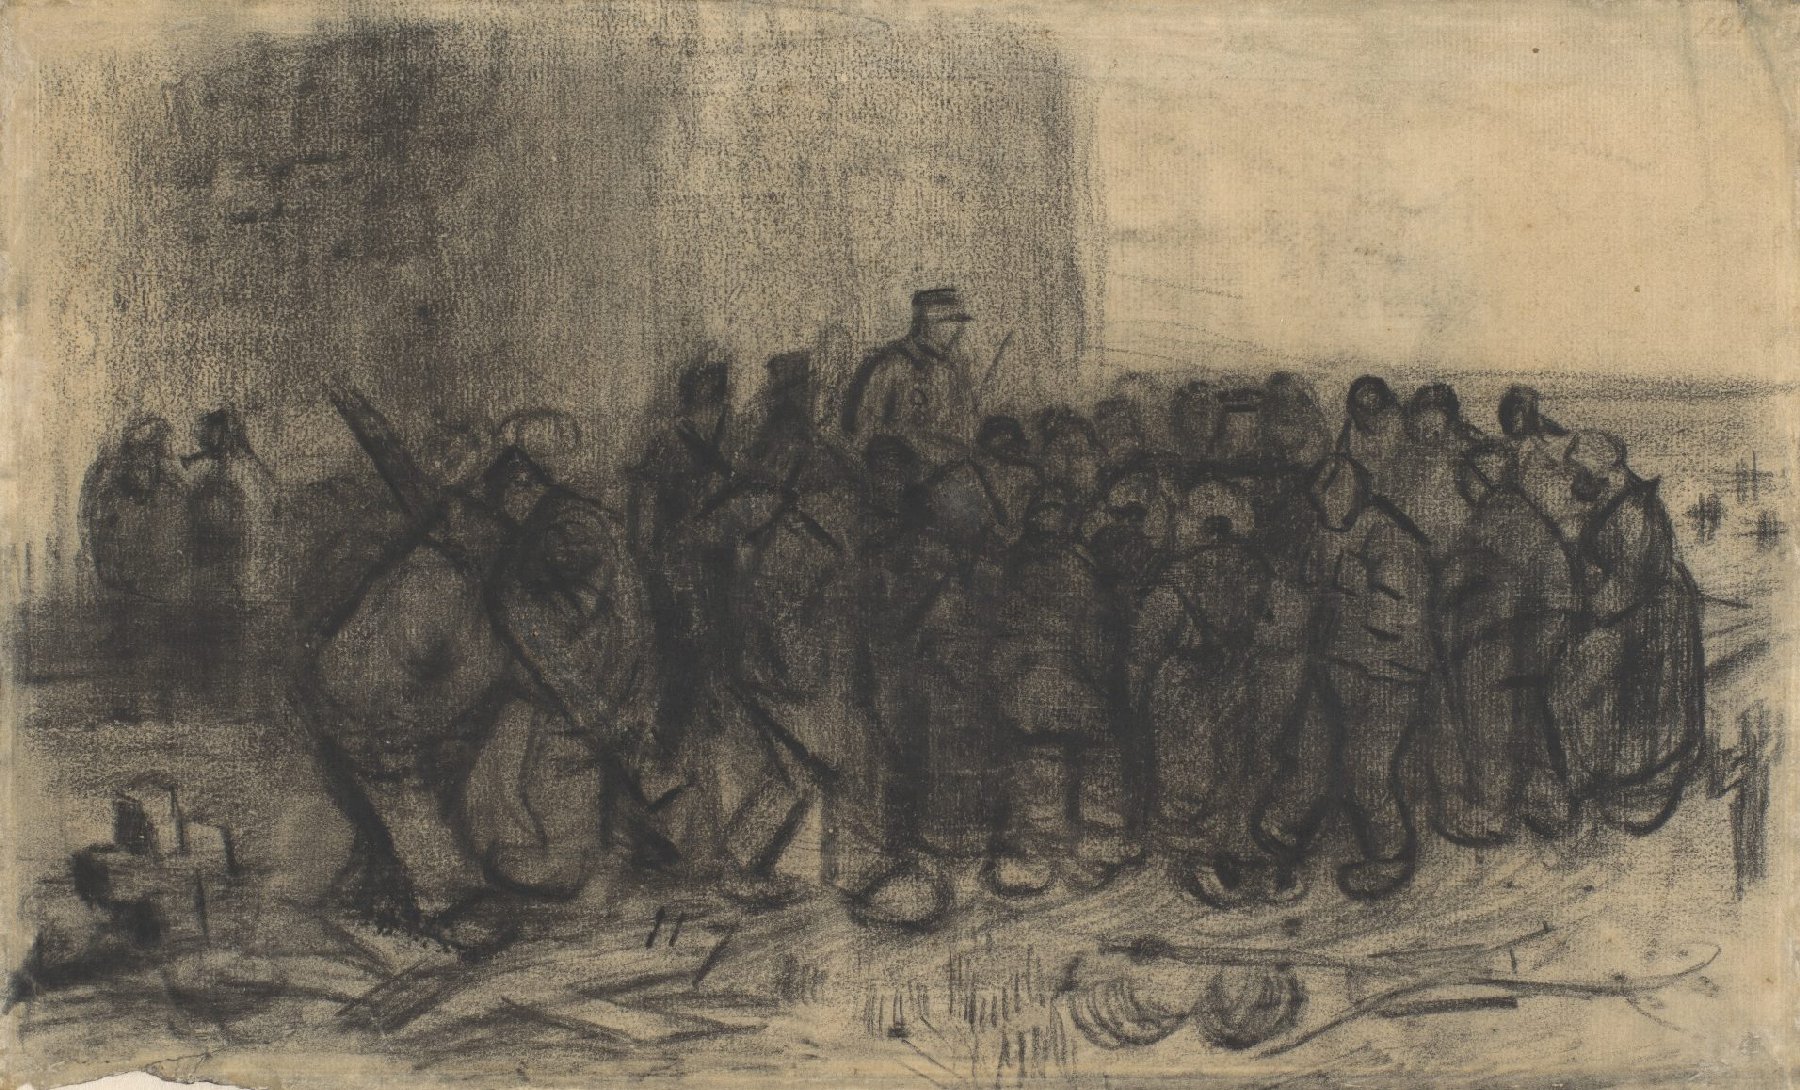 Verkoping van afbraak Vincent van Gogh (1853 - 1890), Nuenen, mei 1885